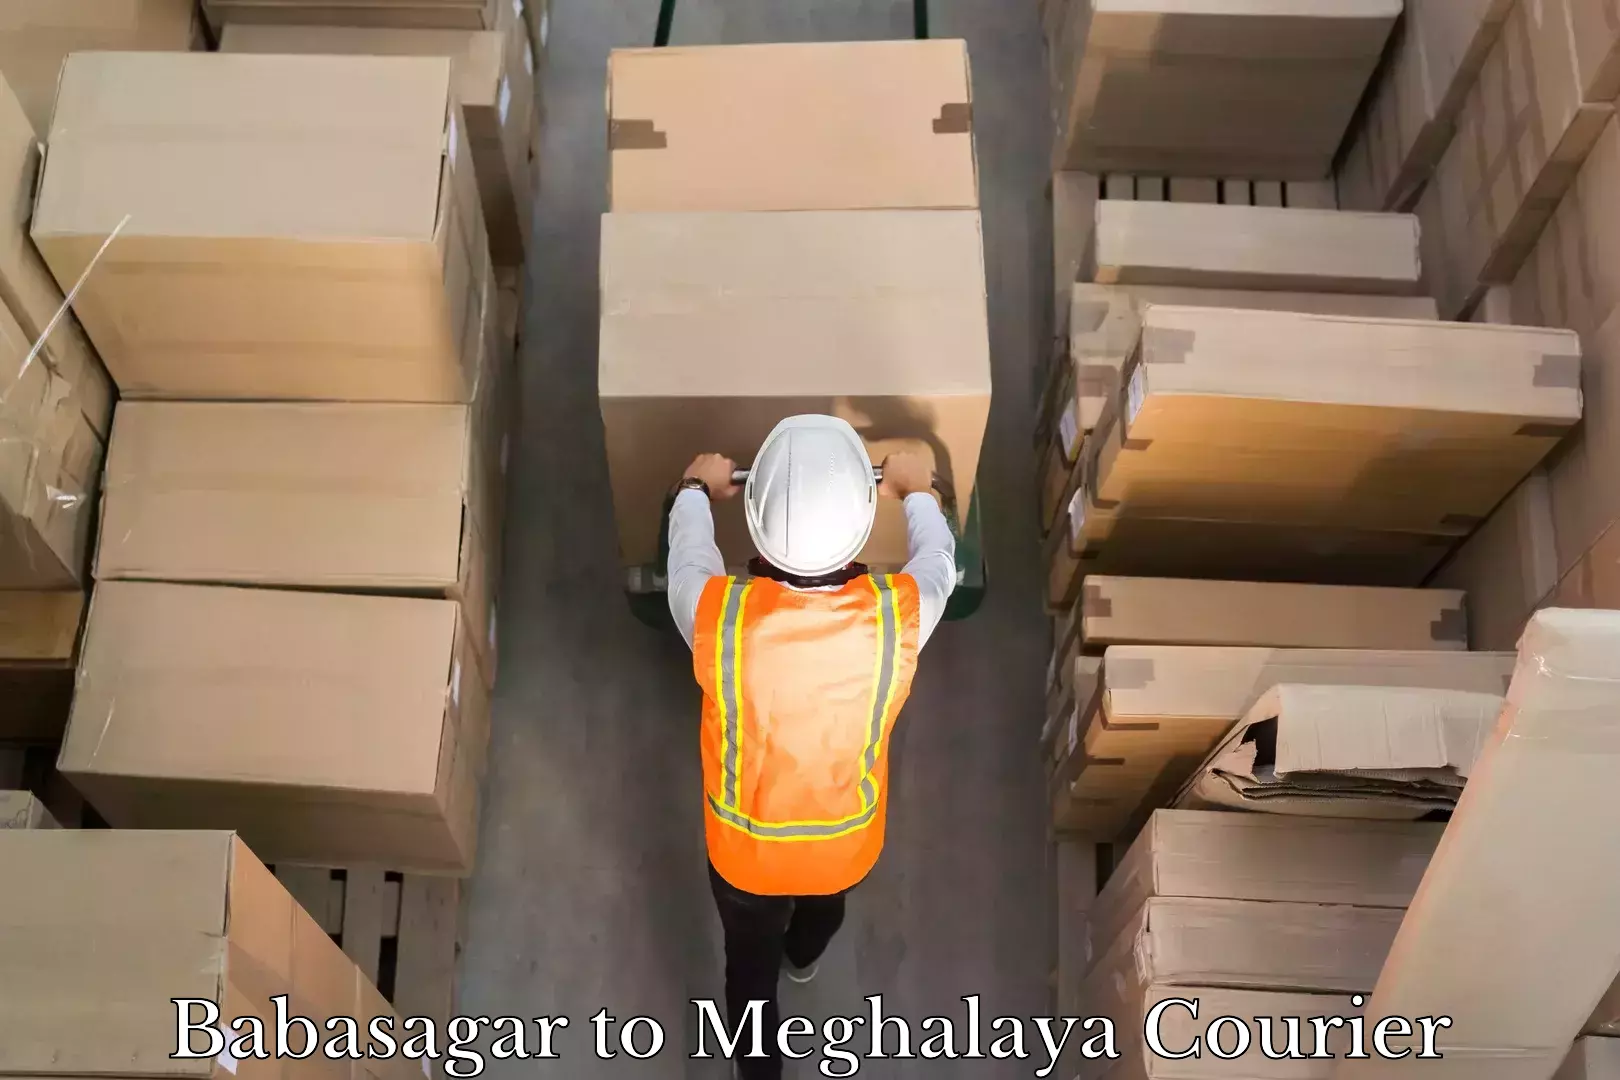 Courier service booking Babasagar to Meghalaya